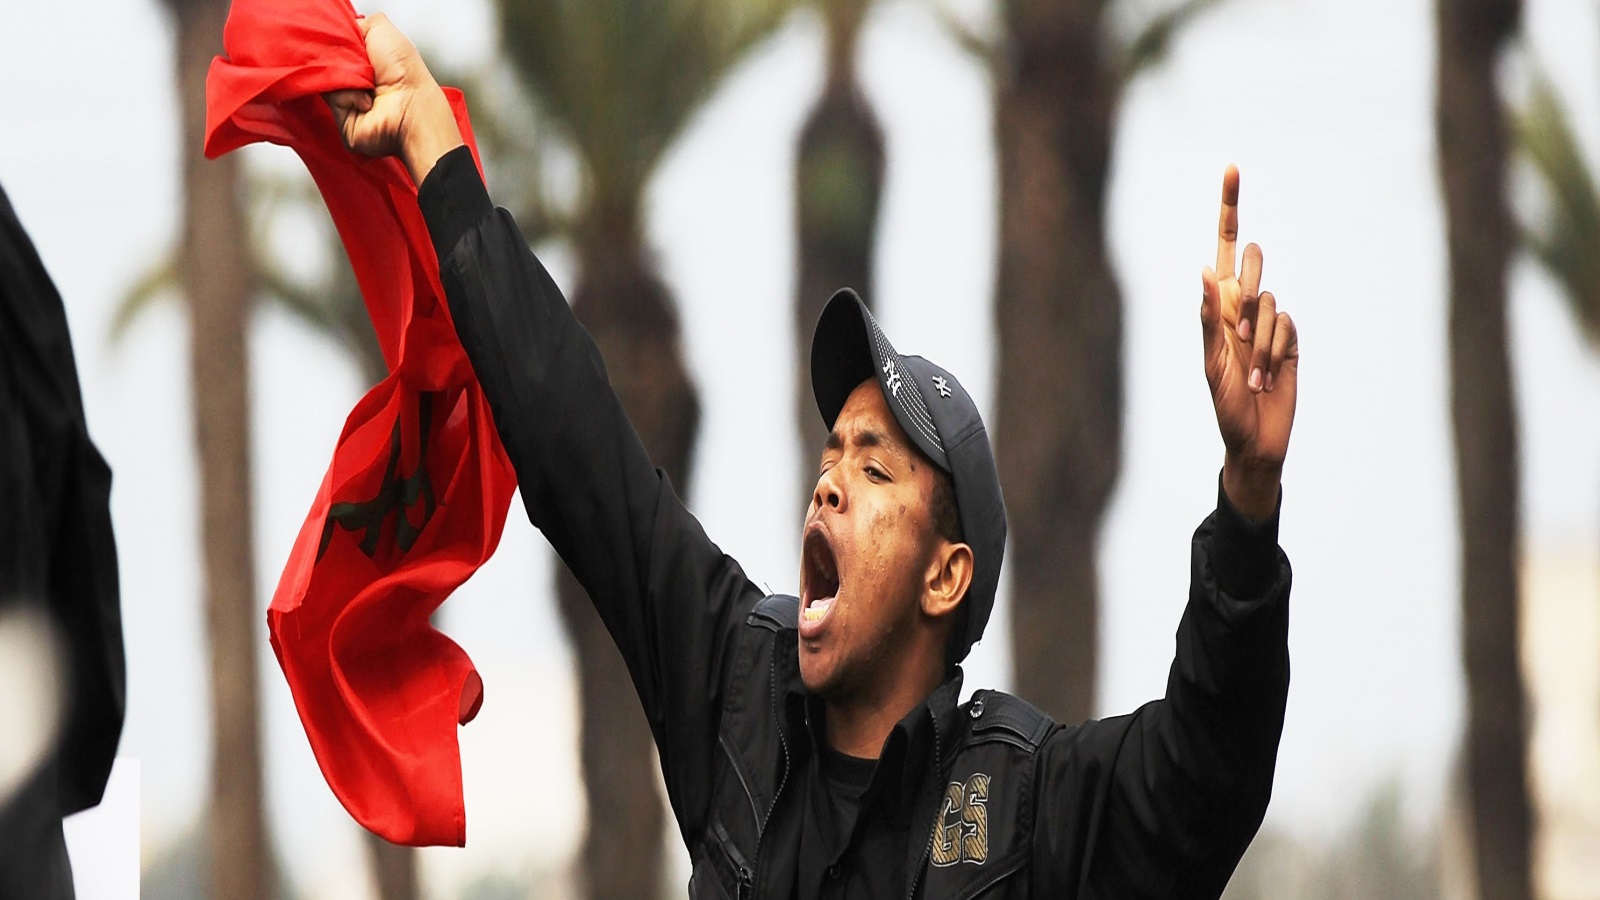 في السياق المغربي المتسم بتهالك قوى المنظومات الحزبية المسؤولة، صارت الخشية من ظهور نمط تفكير شعبوي عند الجيل الصاعد.